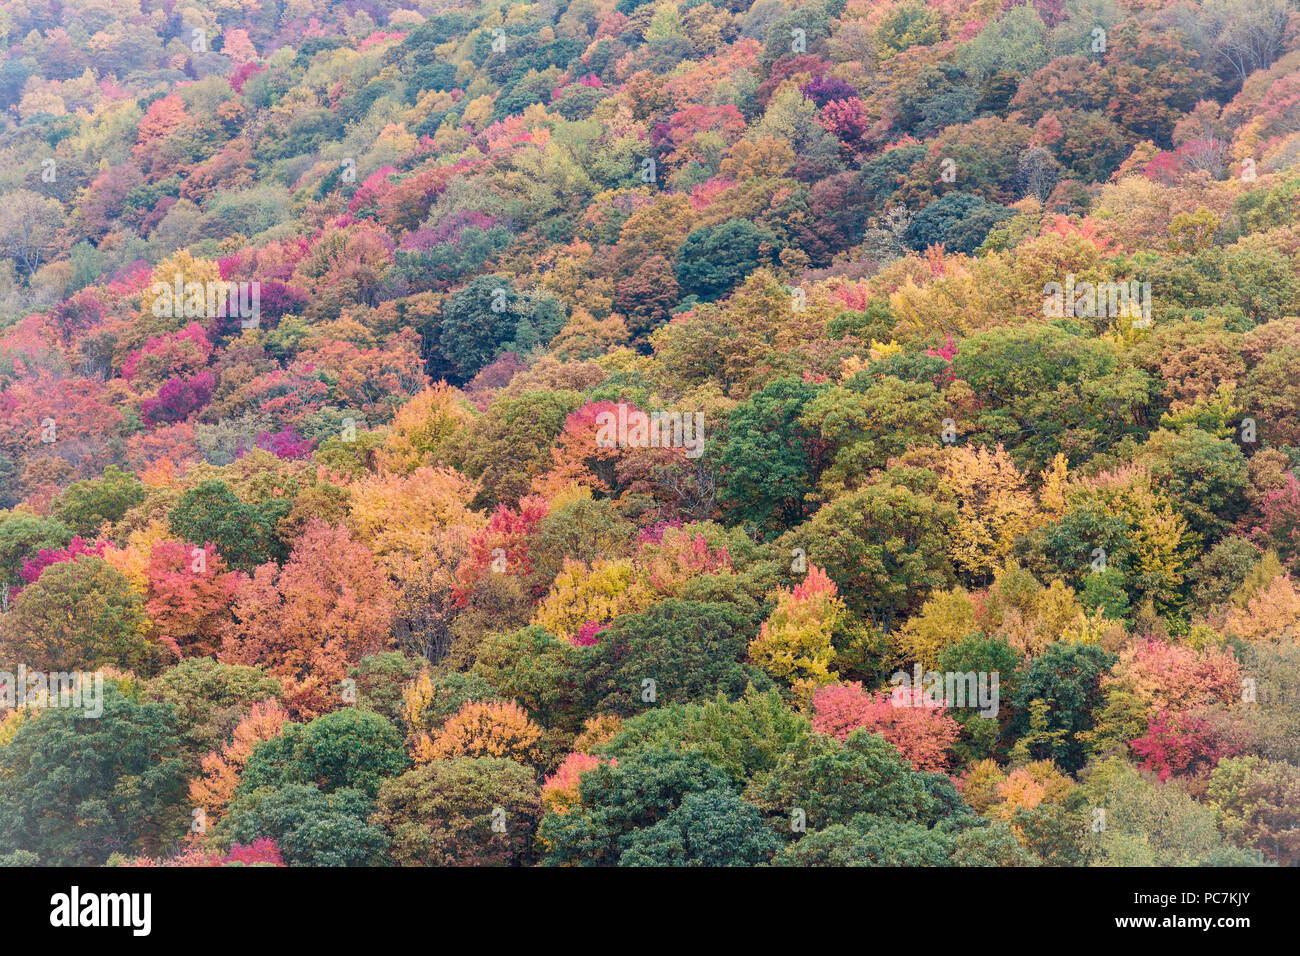 North Carolina, Stati Uniti d'America. Scenario autunnale nel Parco Nazionale di Great Smoky Mountains. UNESCO - Sito Patrimonio dell'umanità. Foto Stock